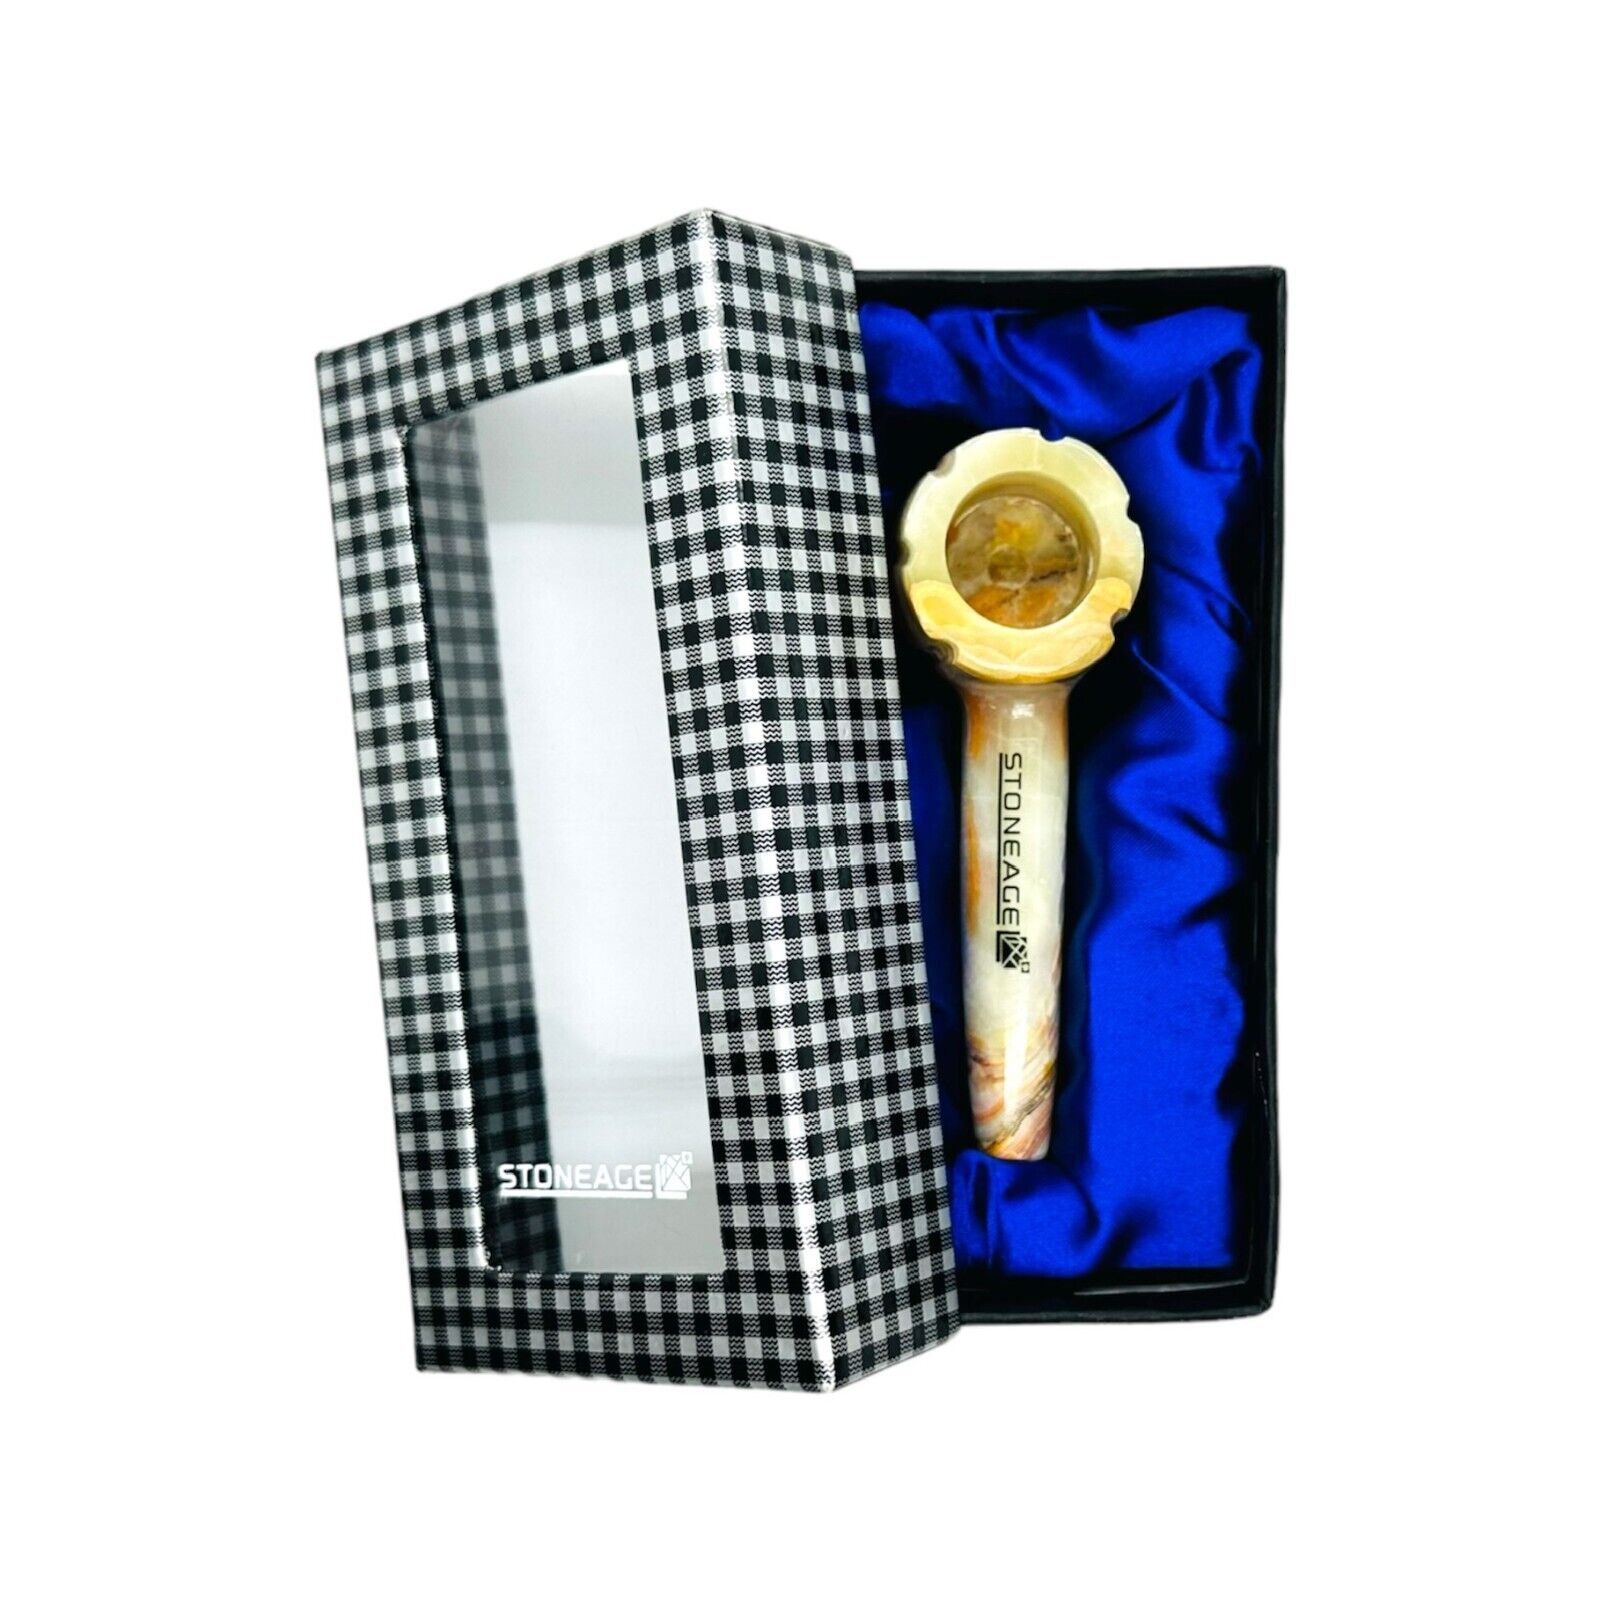 StoneAge Handmade Tobacco Pipe - Model: Bowl Design, Includes Gift Box